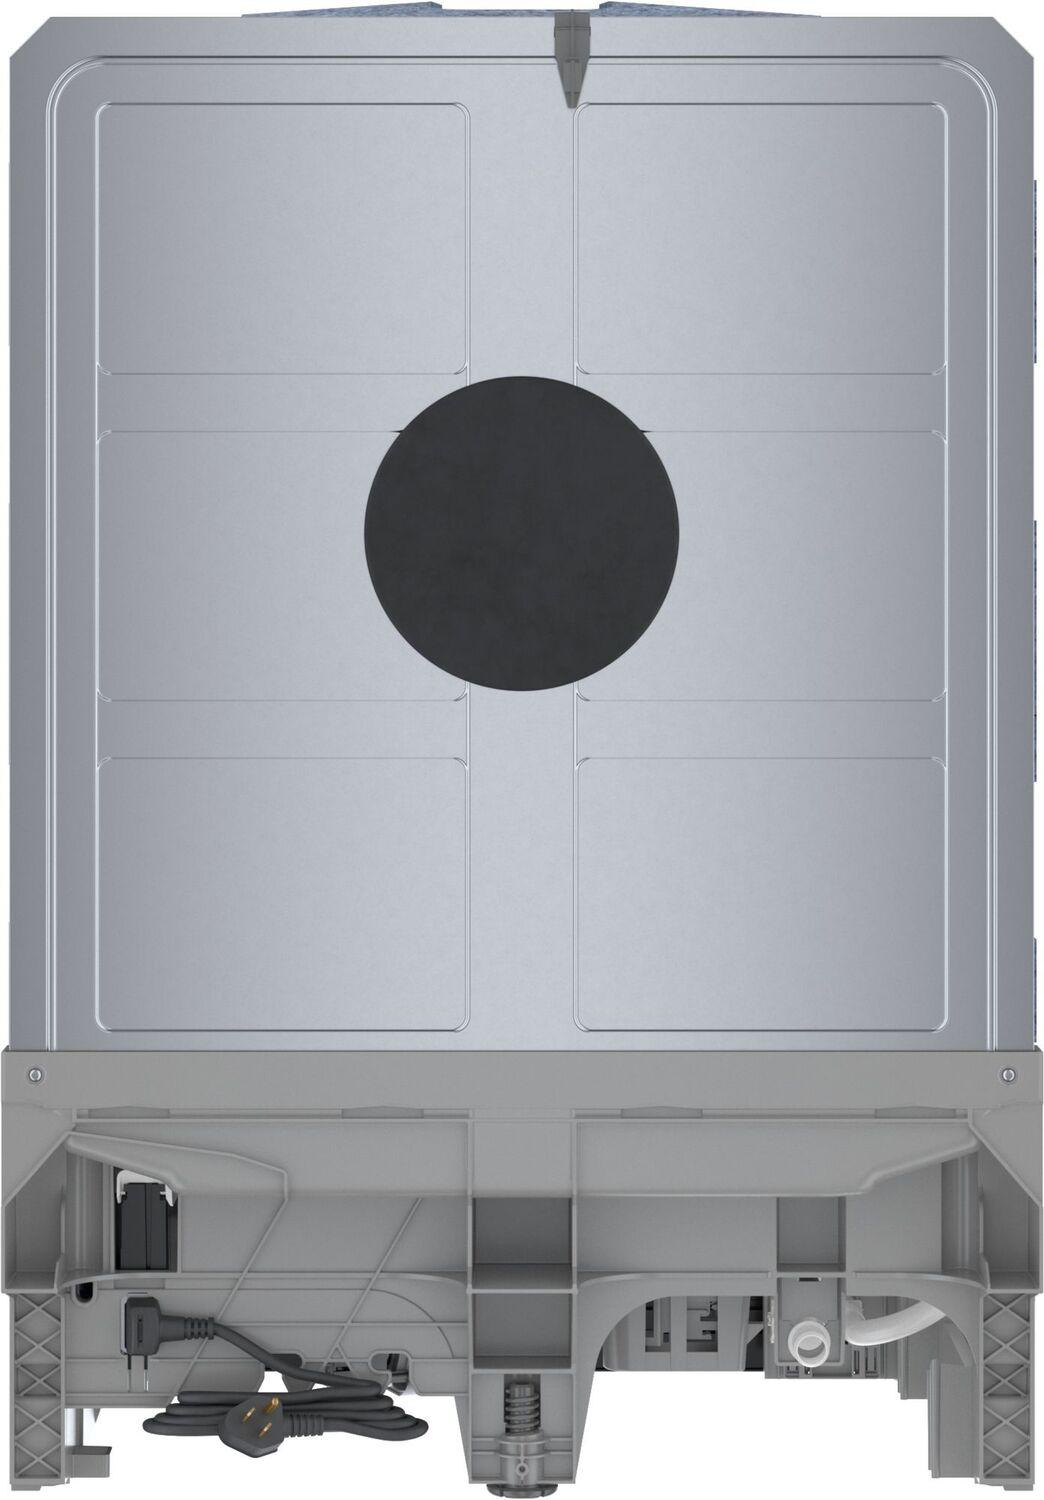 Lave-vaisselle grande cuve 24 po Série 100 Bosch SHX5AEM5N